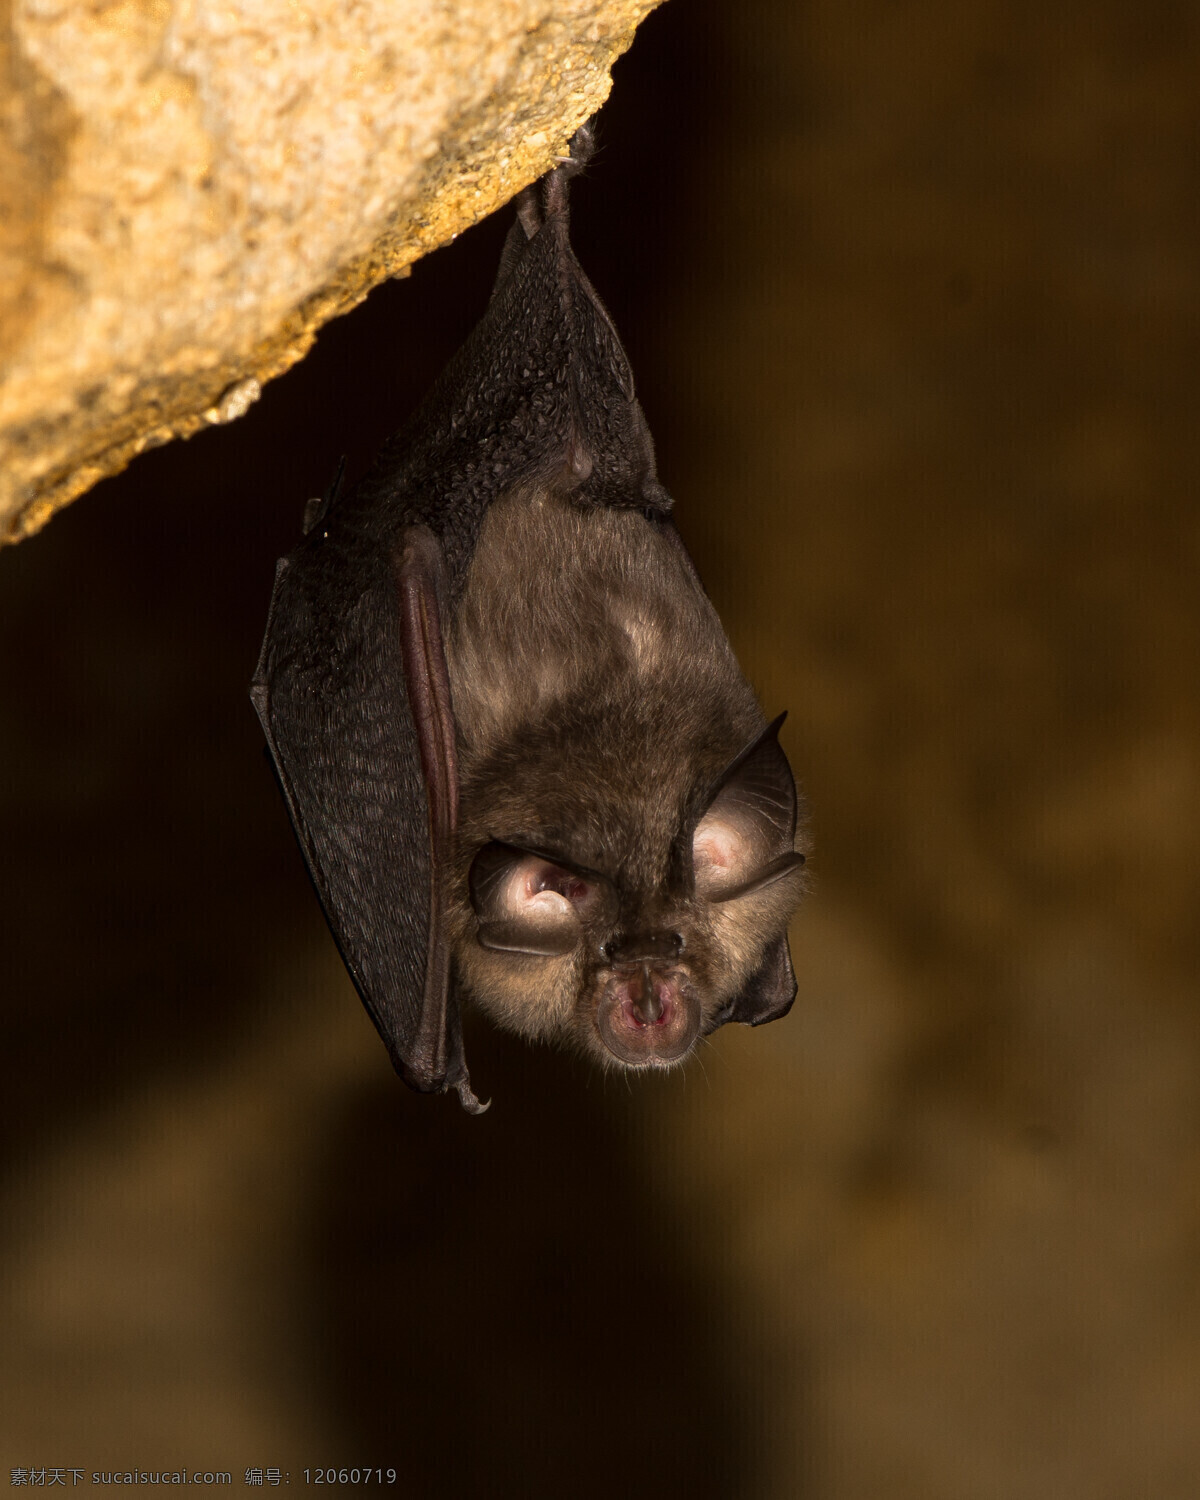 生物 蝙蝠特写 蝙蝠摄影 蝙蝠照片 生物世界 哺乳动物 动物 其他生物